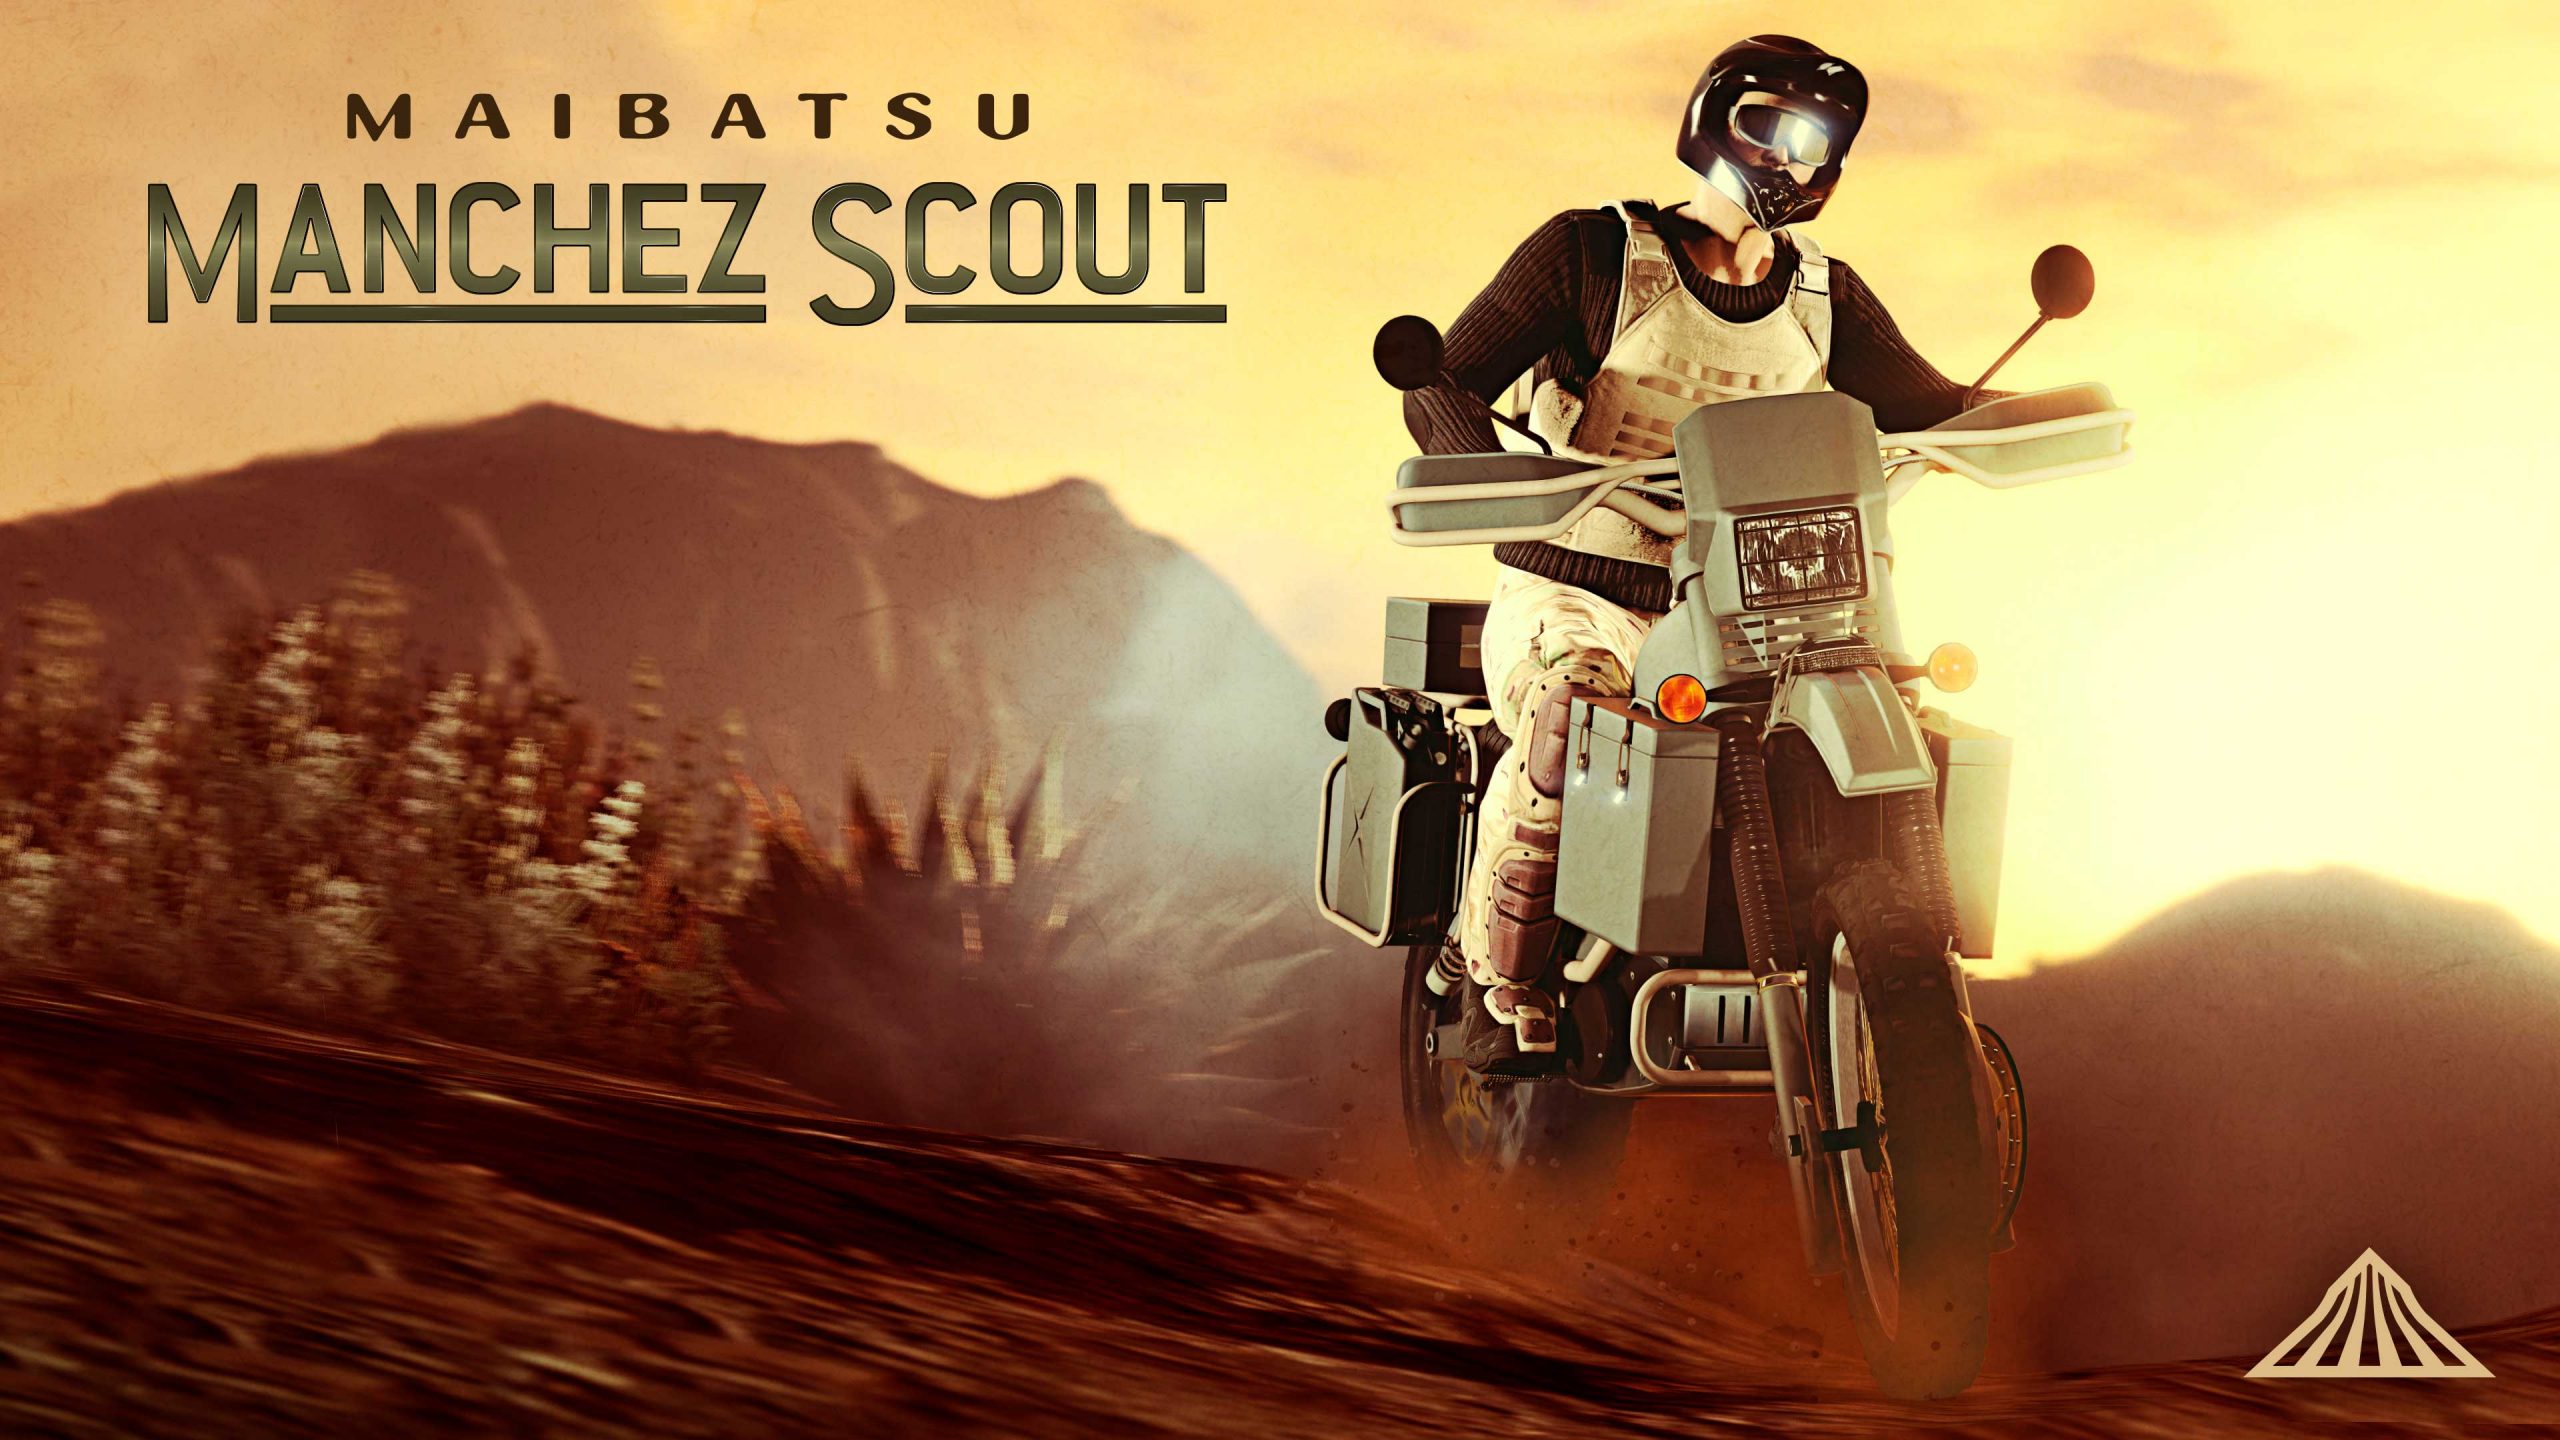 La Maibatsu Manchez Scout est disponible sur GTA Online